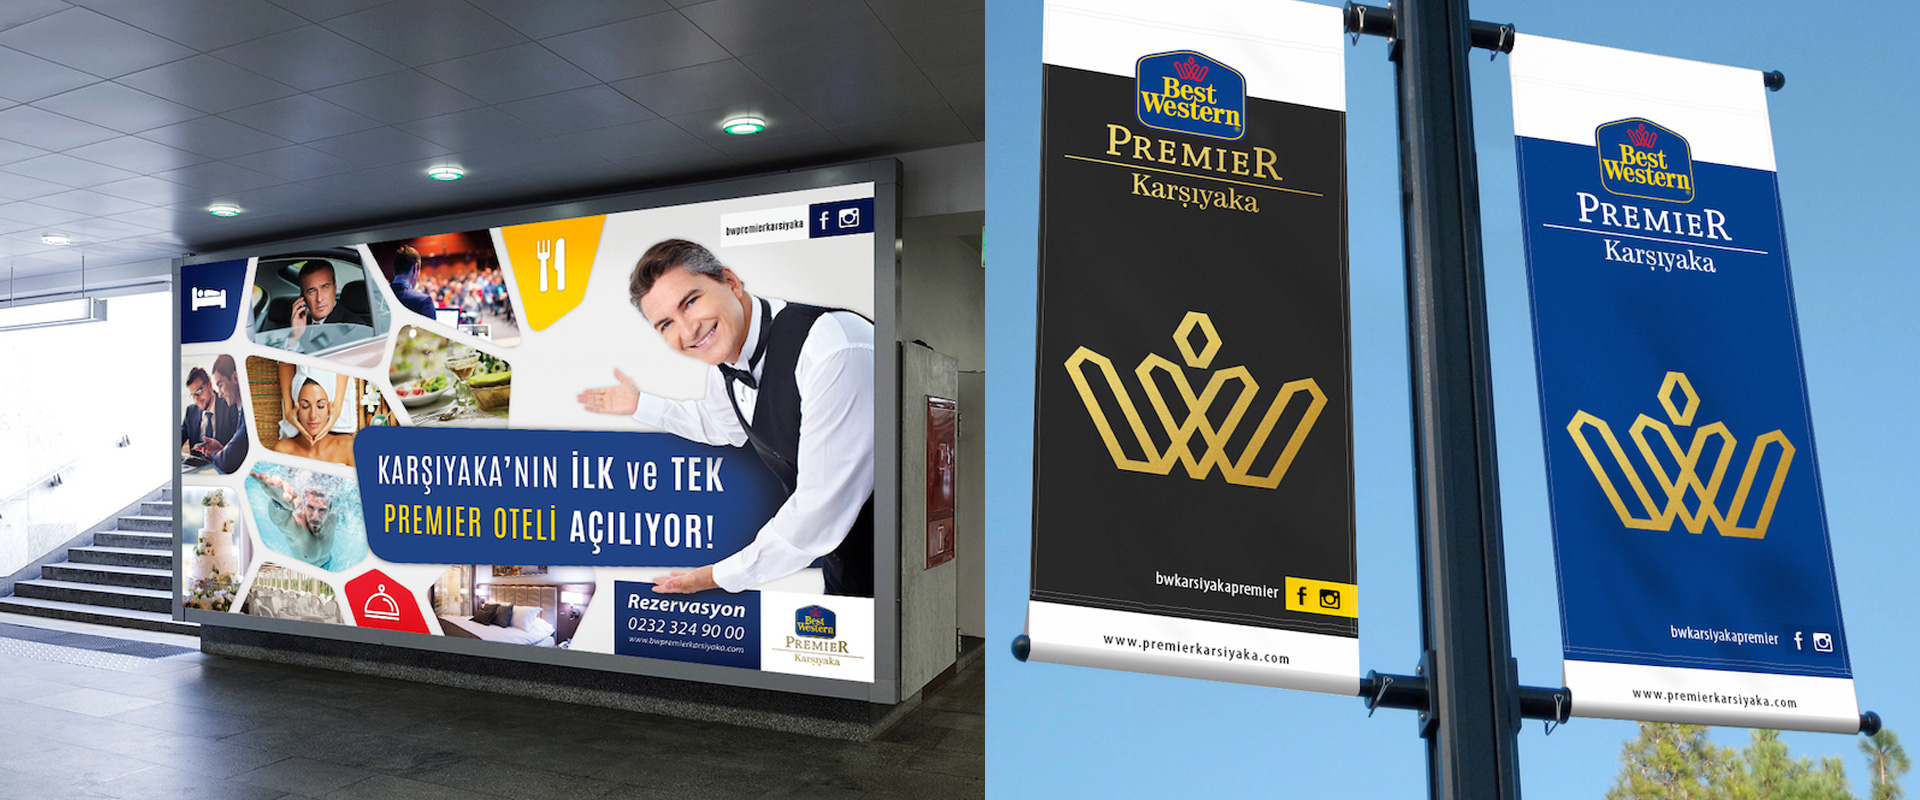 Best Western Premier Karşıyaka - KONSEPTİZ Reklam Ajansı İzmir